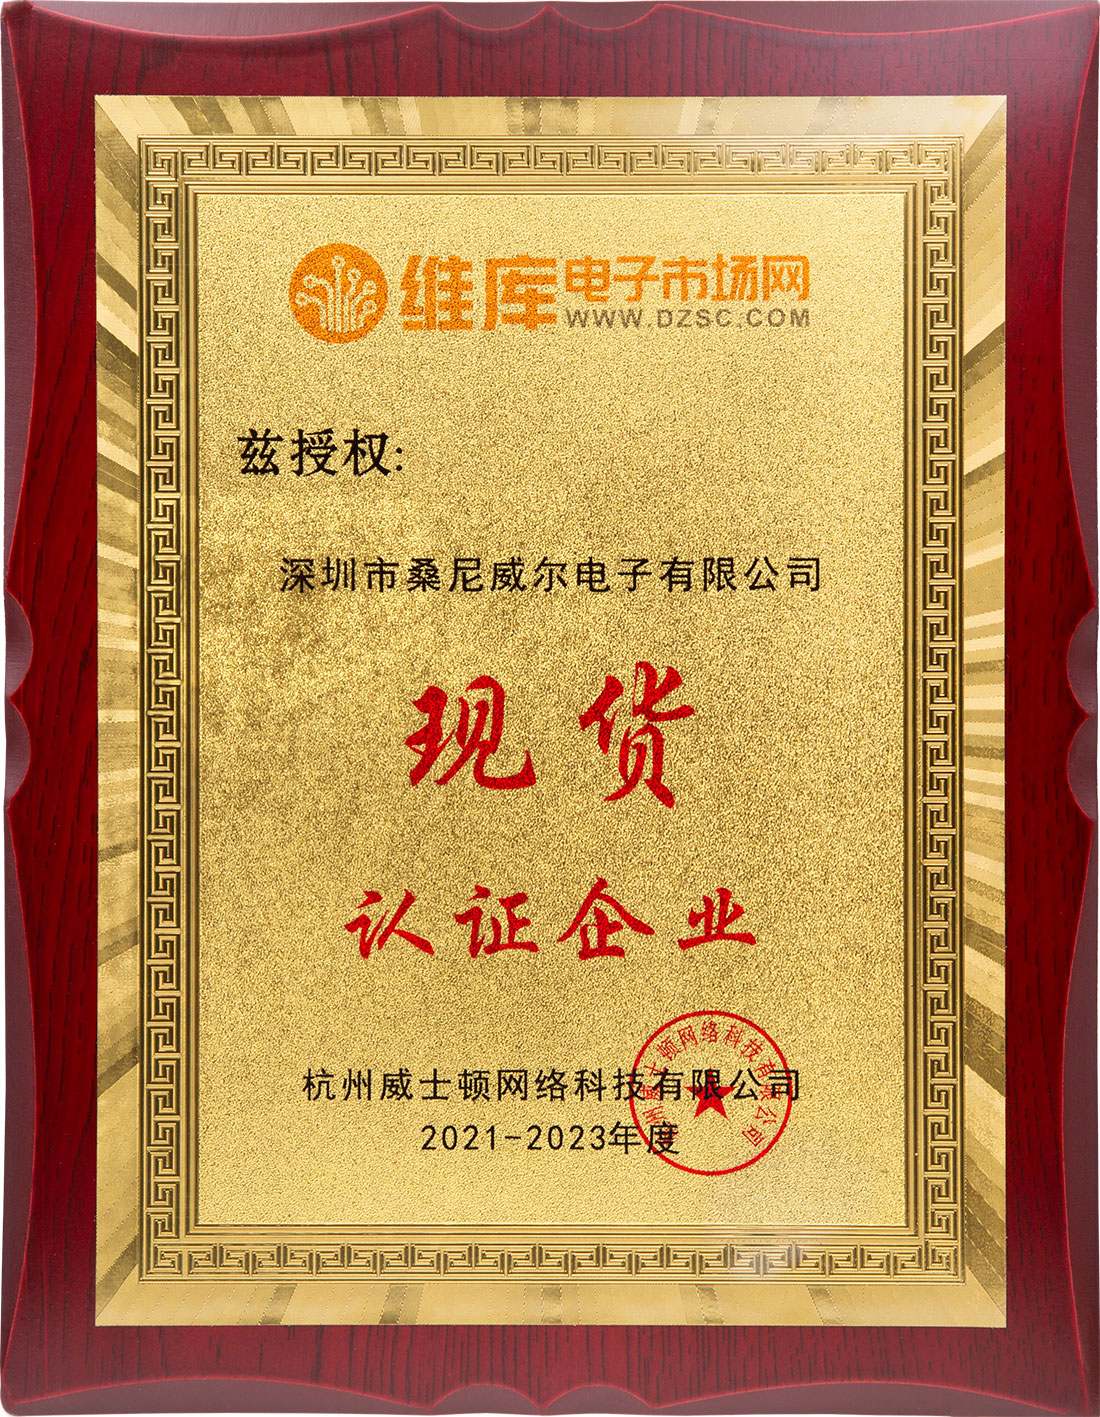 深圳市桑尼威尔电子有限公司维库电子市场现货认证证书